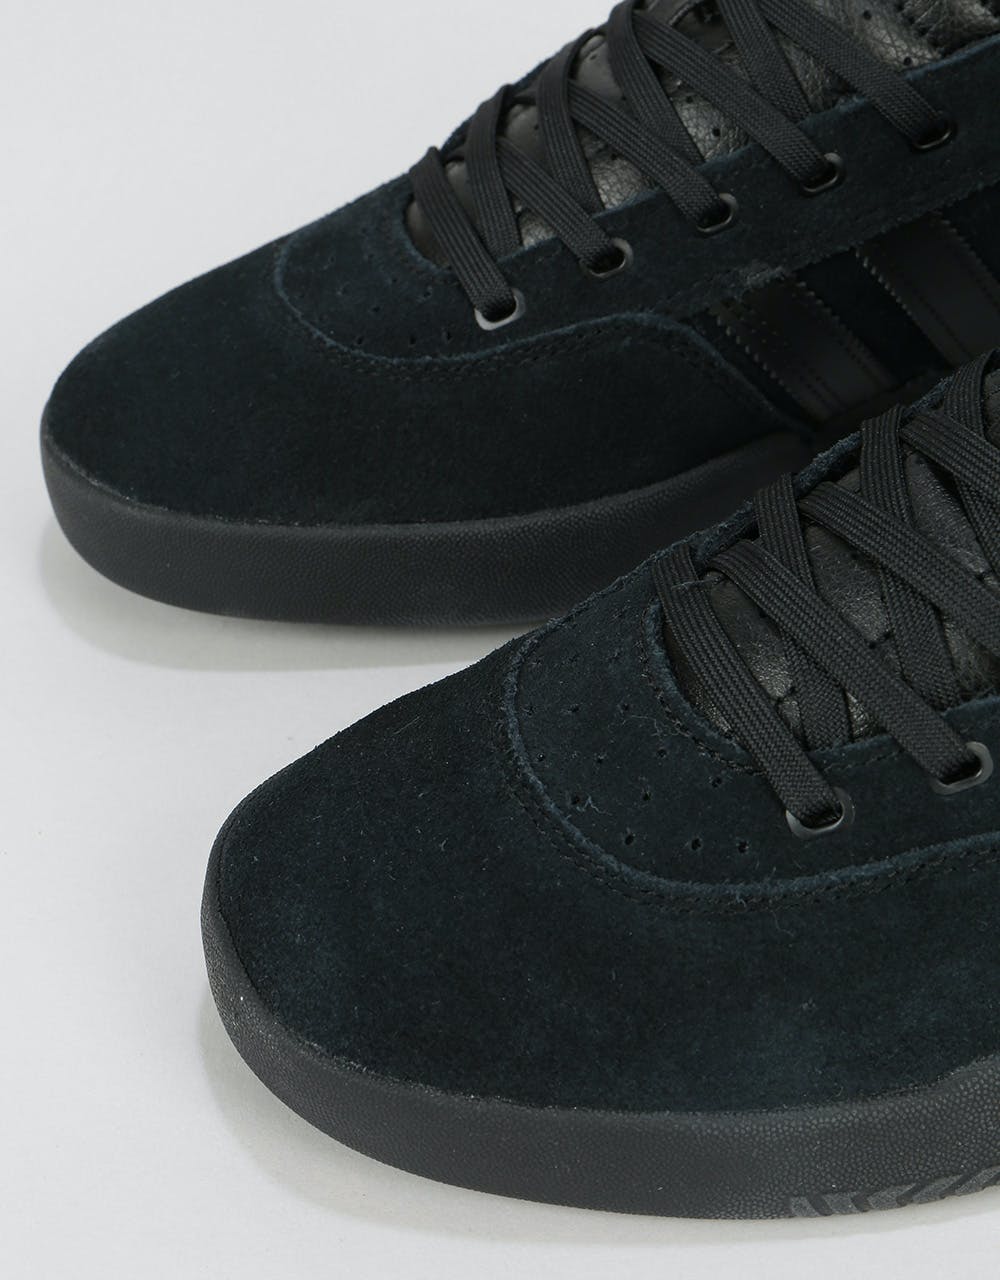 Adidas City Cup Skate Shoes - Core Black/Core Black/Core Black